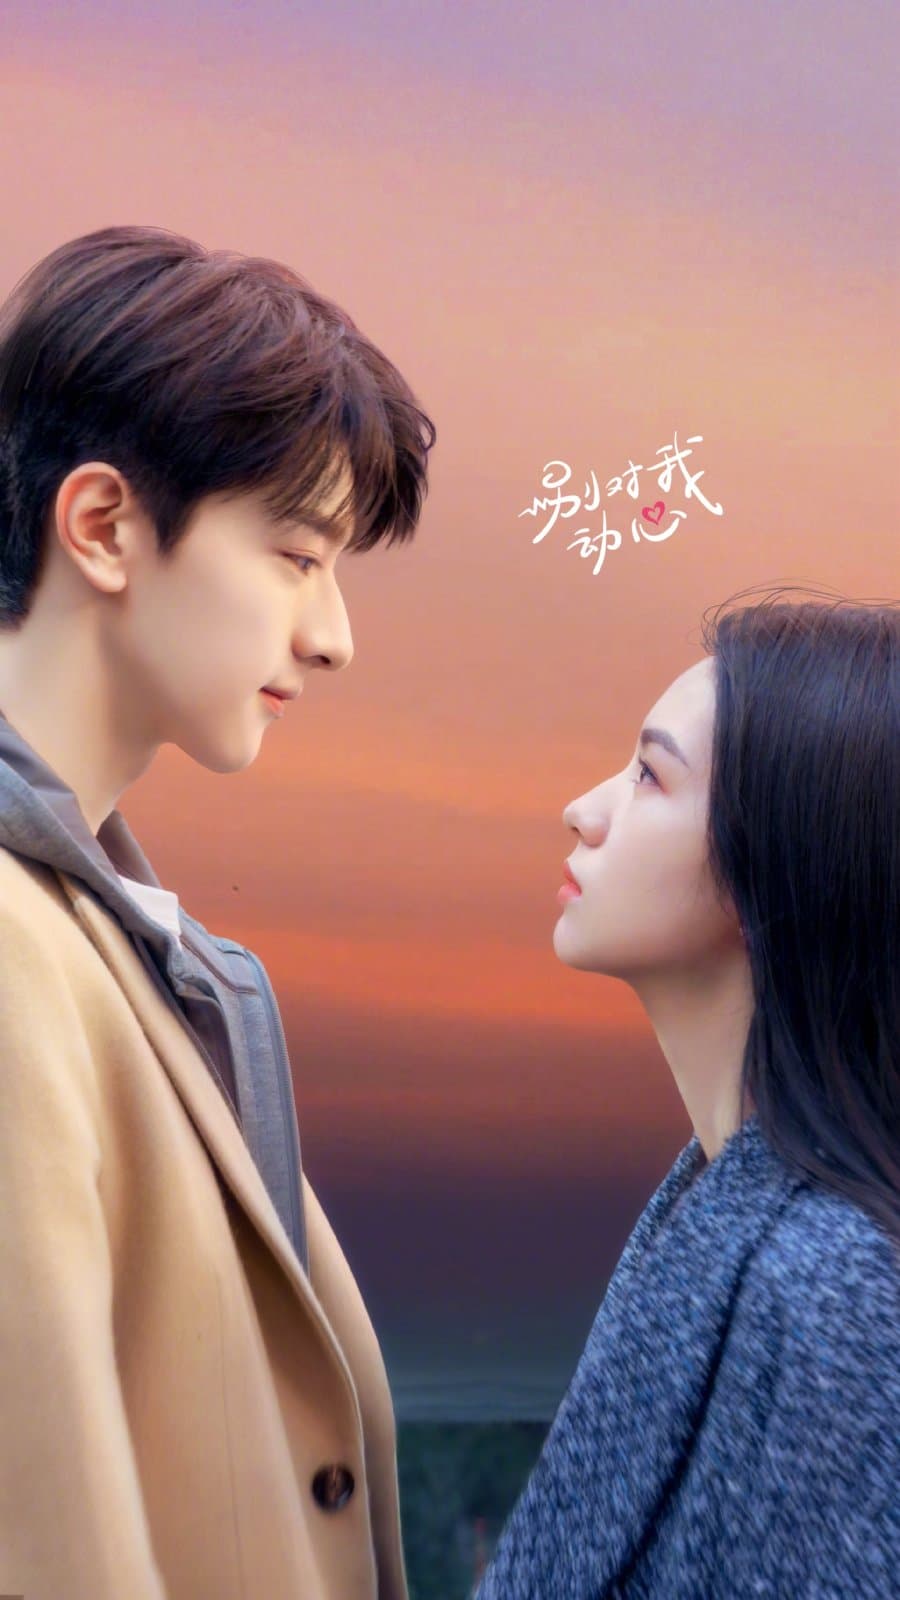 Линь И и Чжоу Е в трейлере предстоящей дорамы "Влюбиться" + дата премьеры